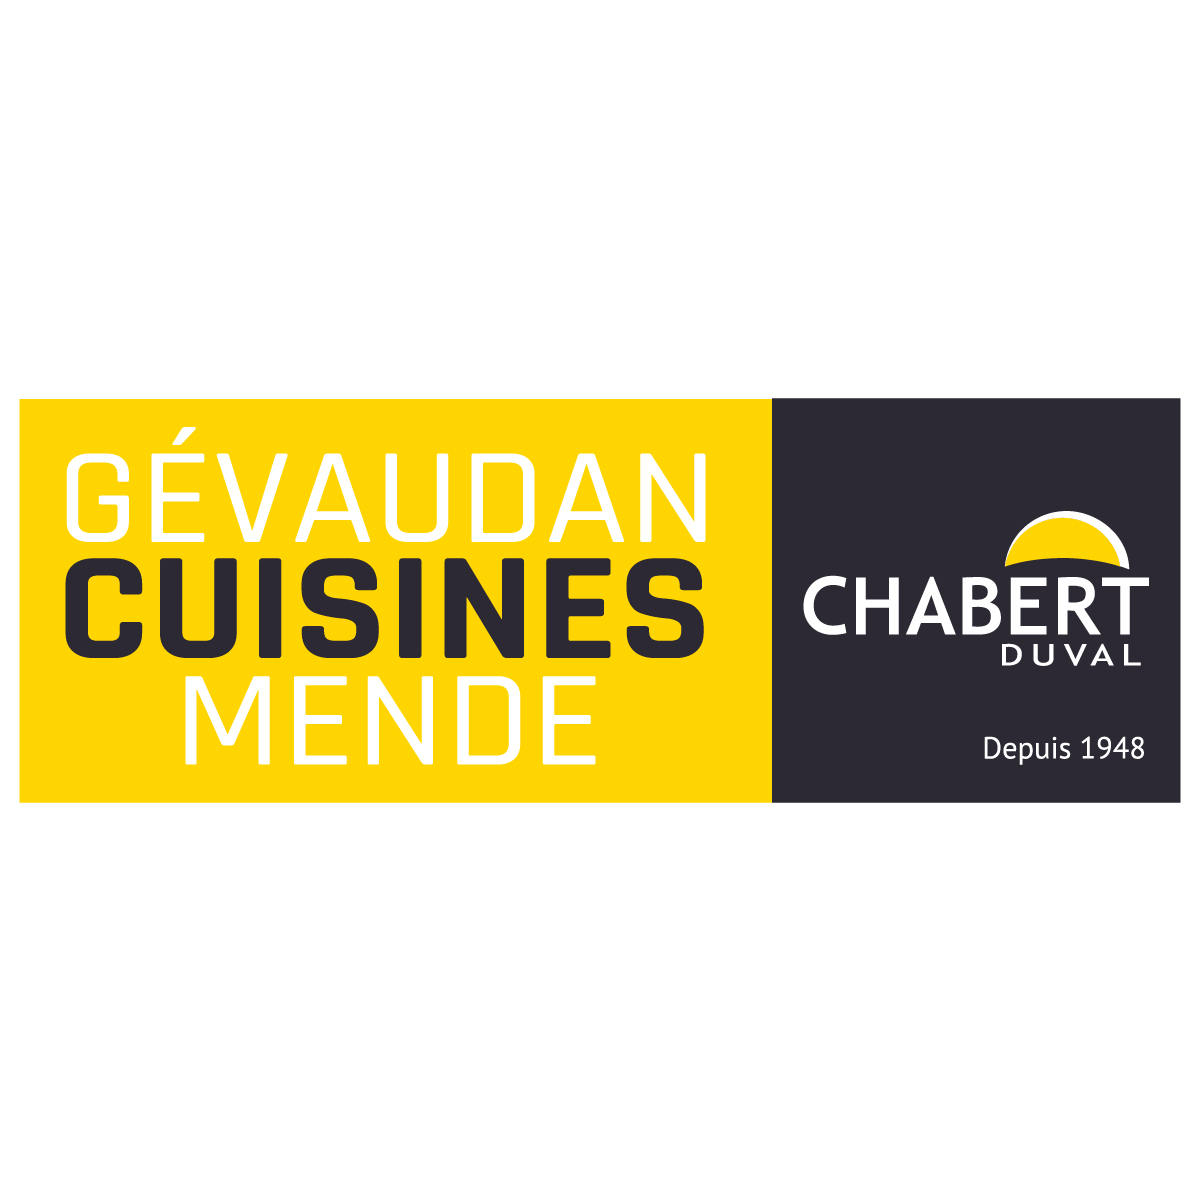 (c) Gevaudan-cuisines-mende.fr